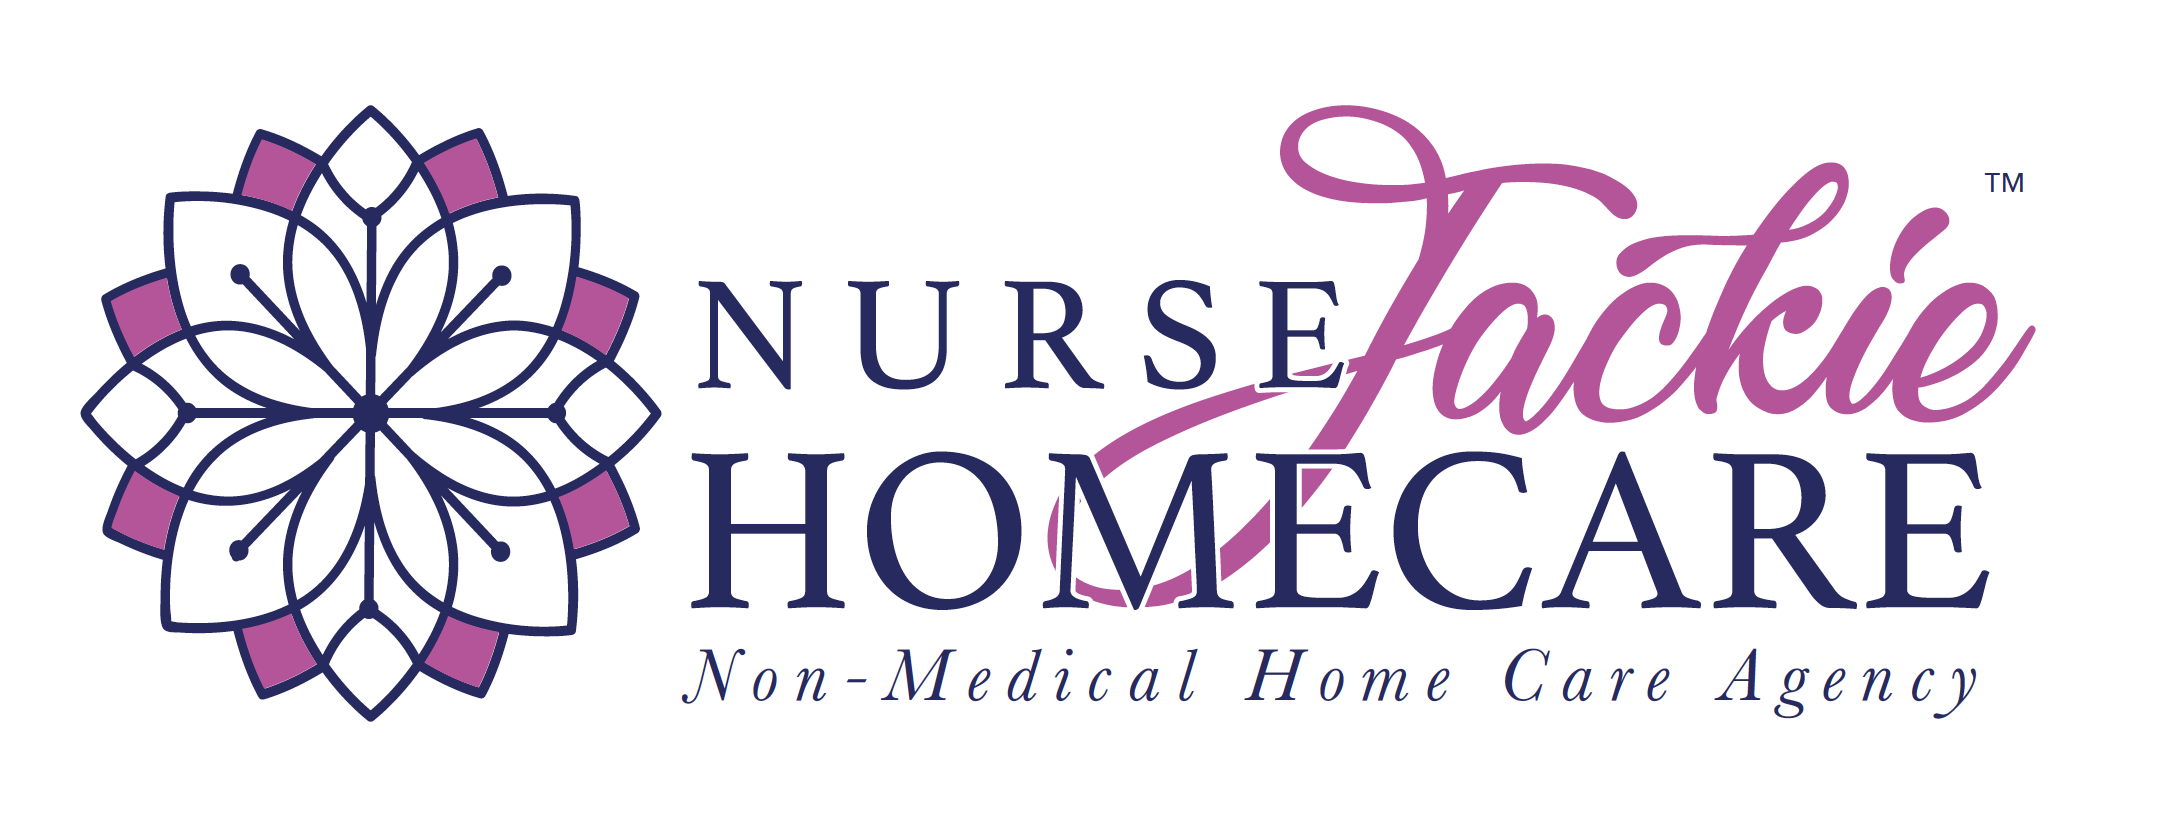 Nurse Jackie Homecare